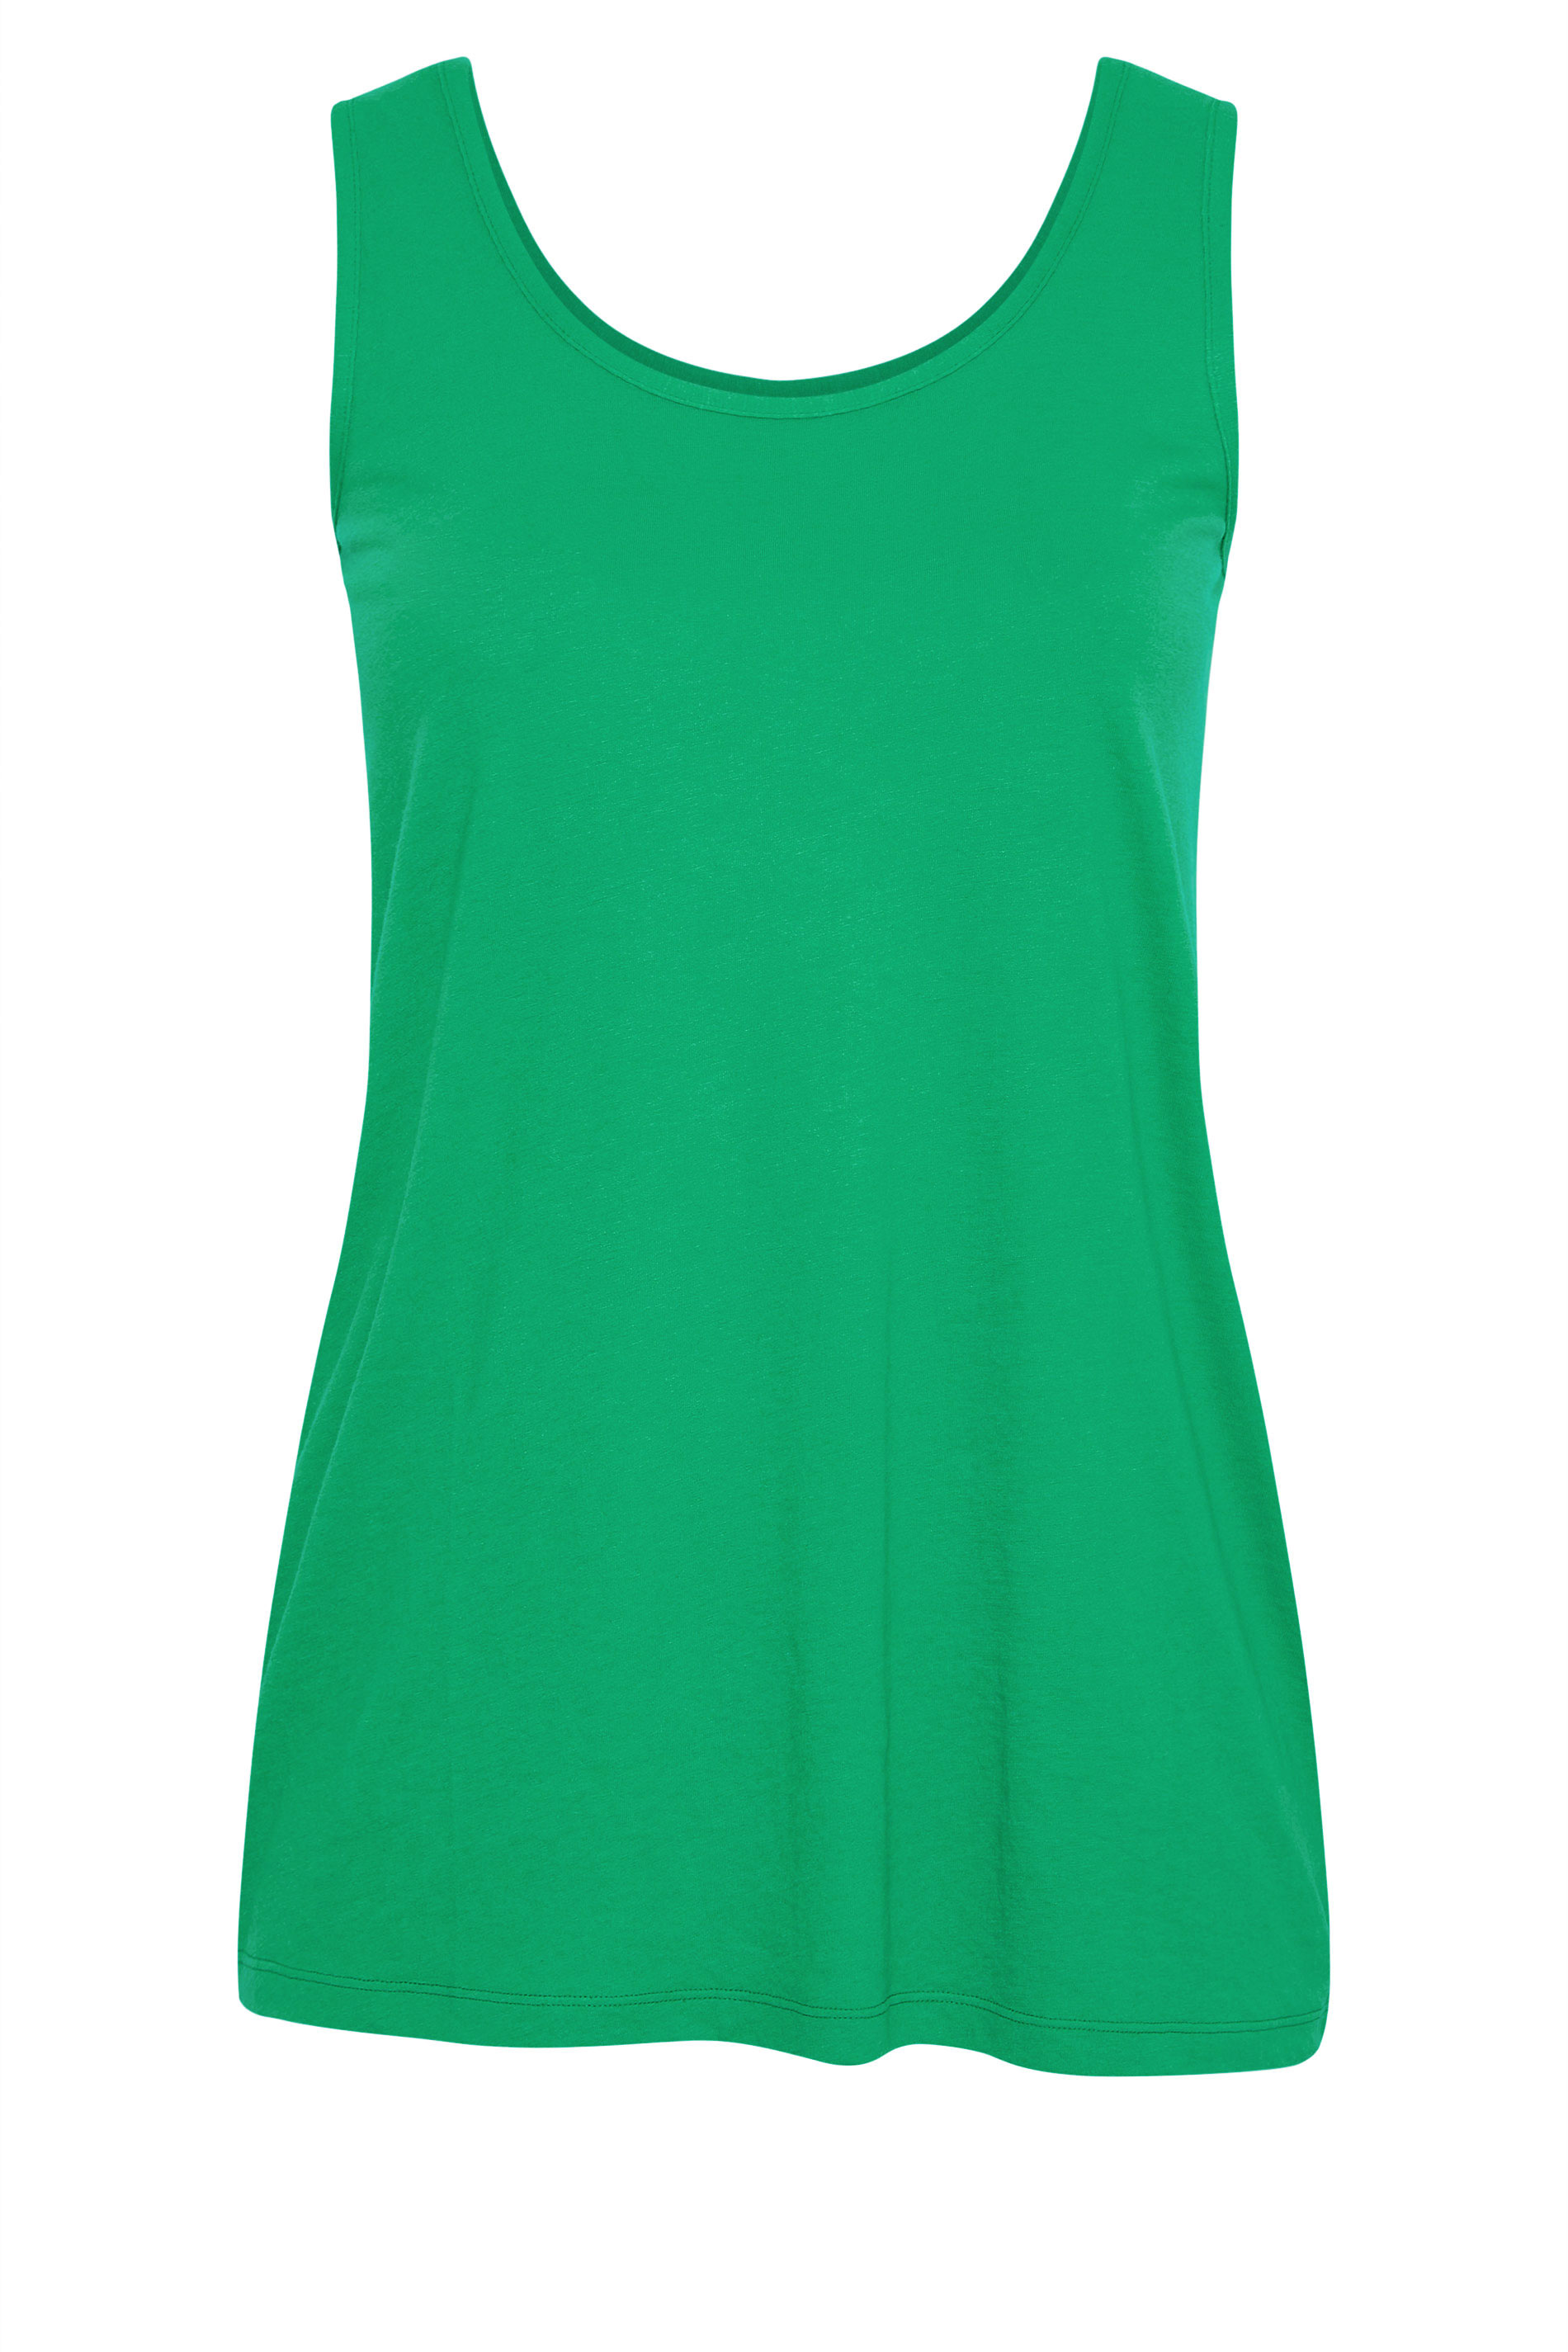 Grande taille  Tops Grande taille  T-Shirts Basiques & Débardeurs | Débardeur Vert en Jersey - NZ84530